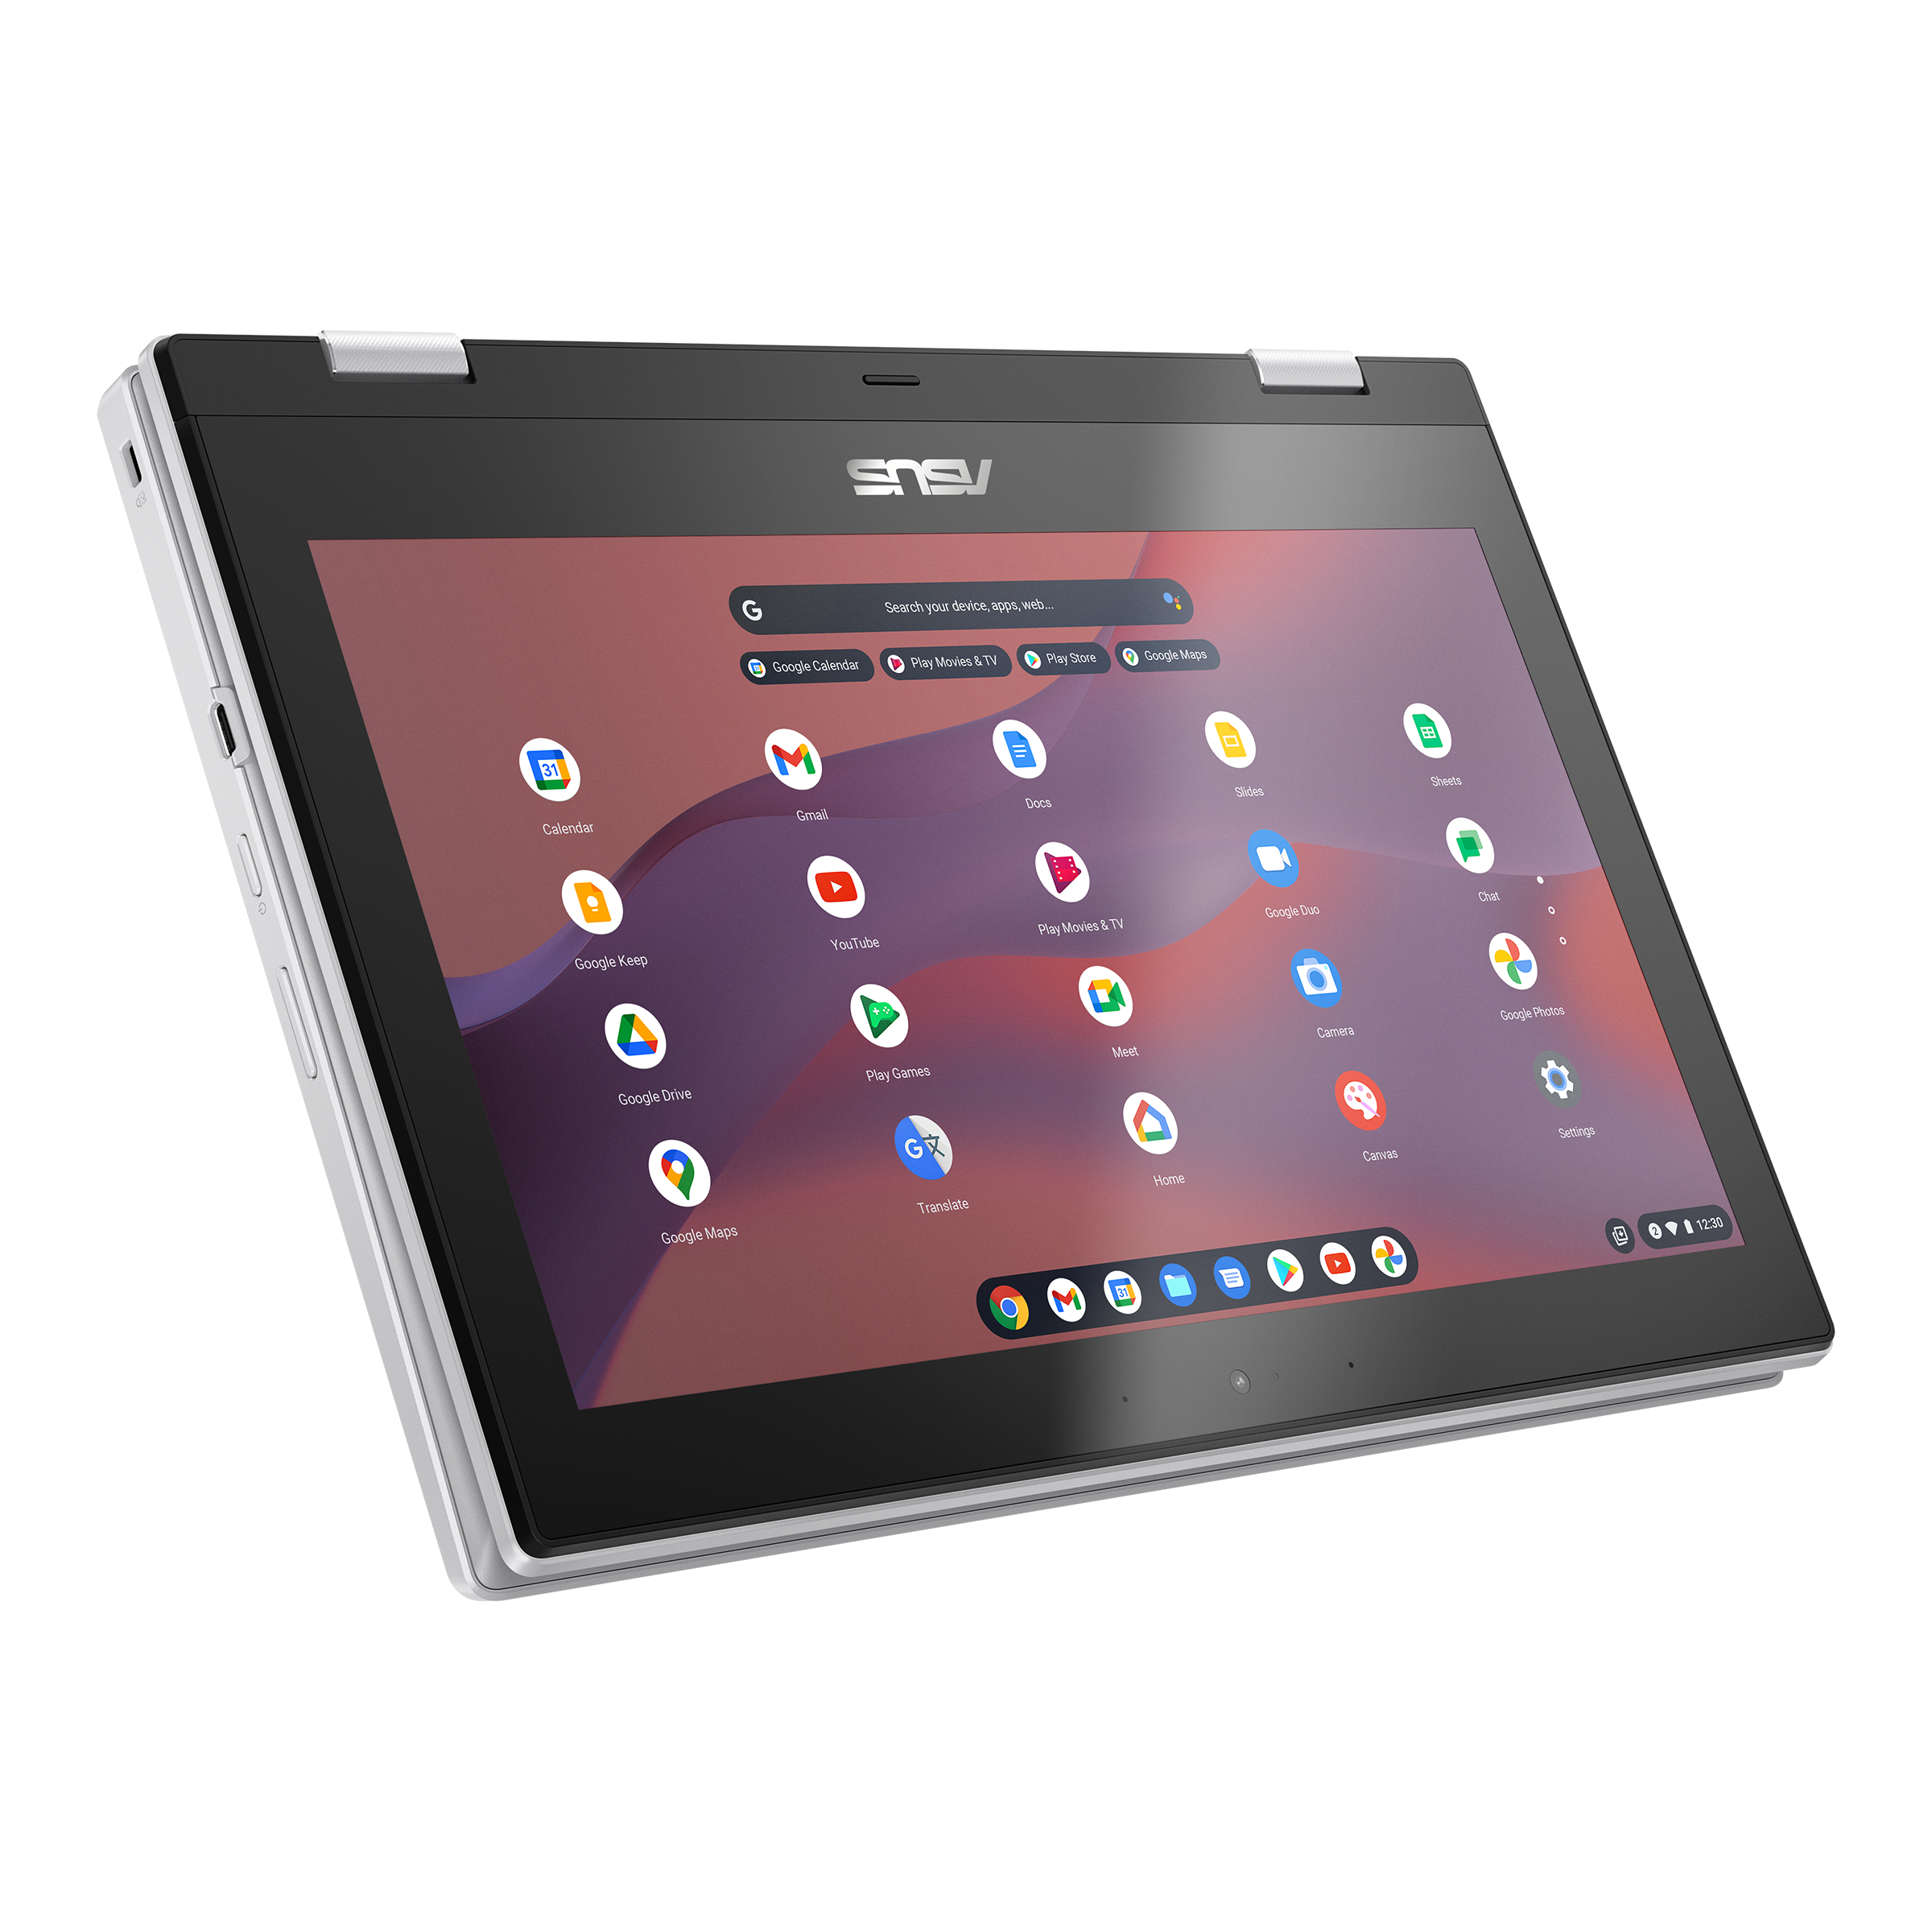 【専用】ASUS Chromebook  Flip CX1 CX1102